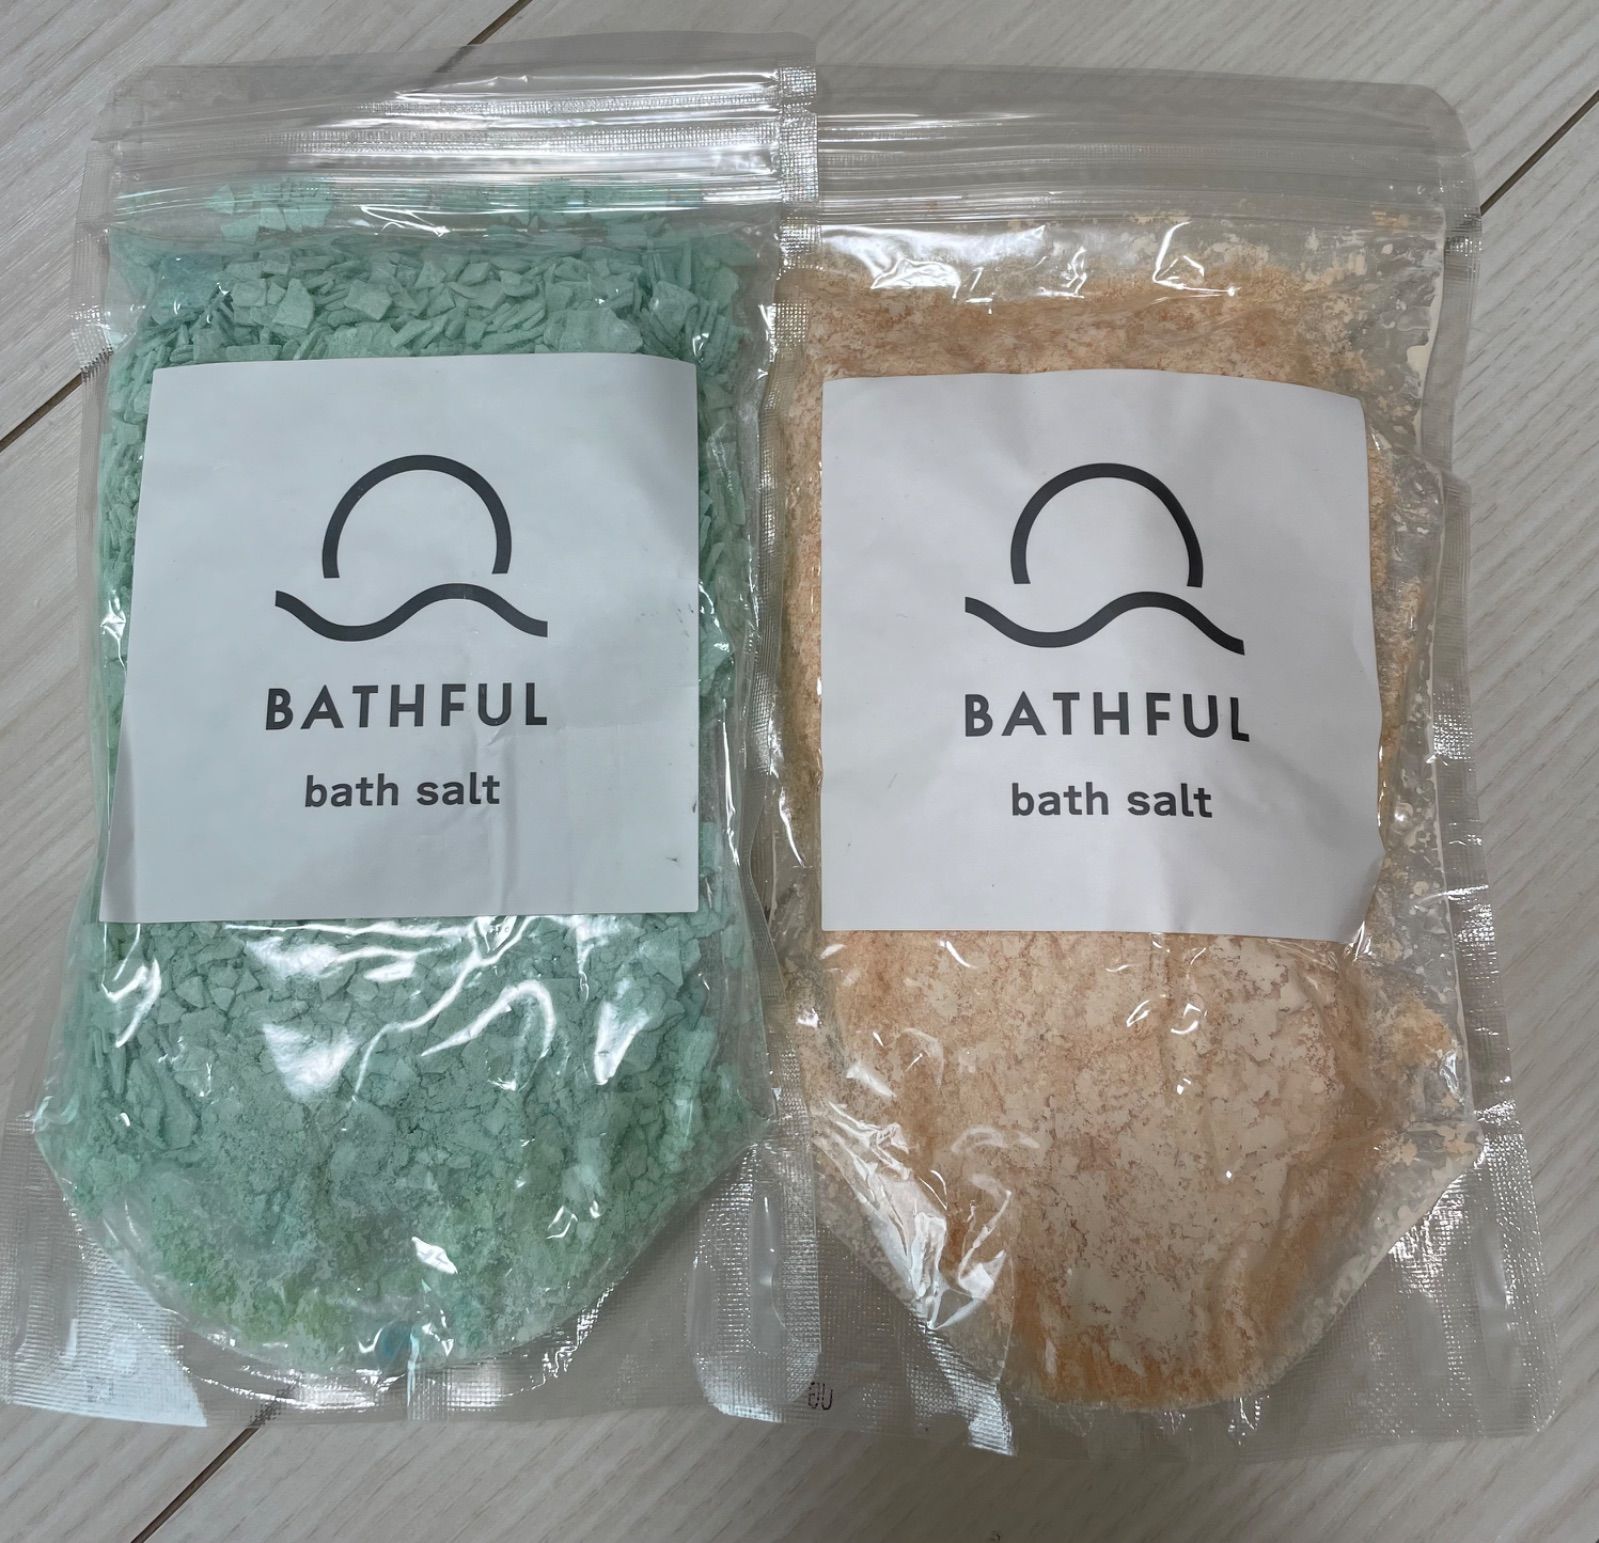 BATHFUL bath salt 入浴剤 ホワイトフルールの香り - 入浴剤・バスソルト